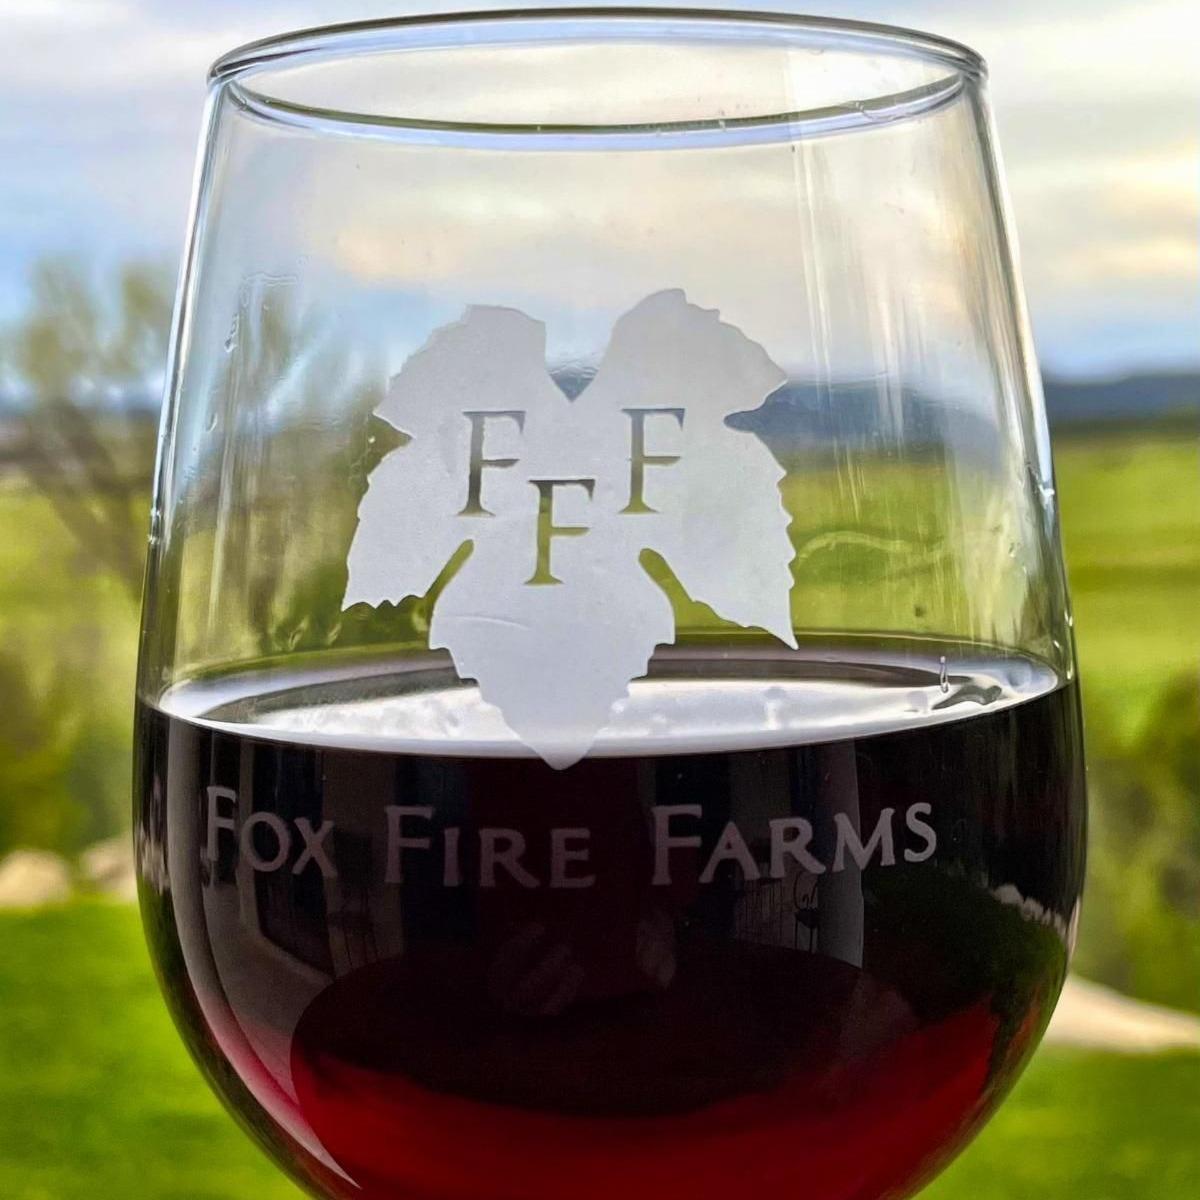 Pet Friendly Fox Fire Farms Winery